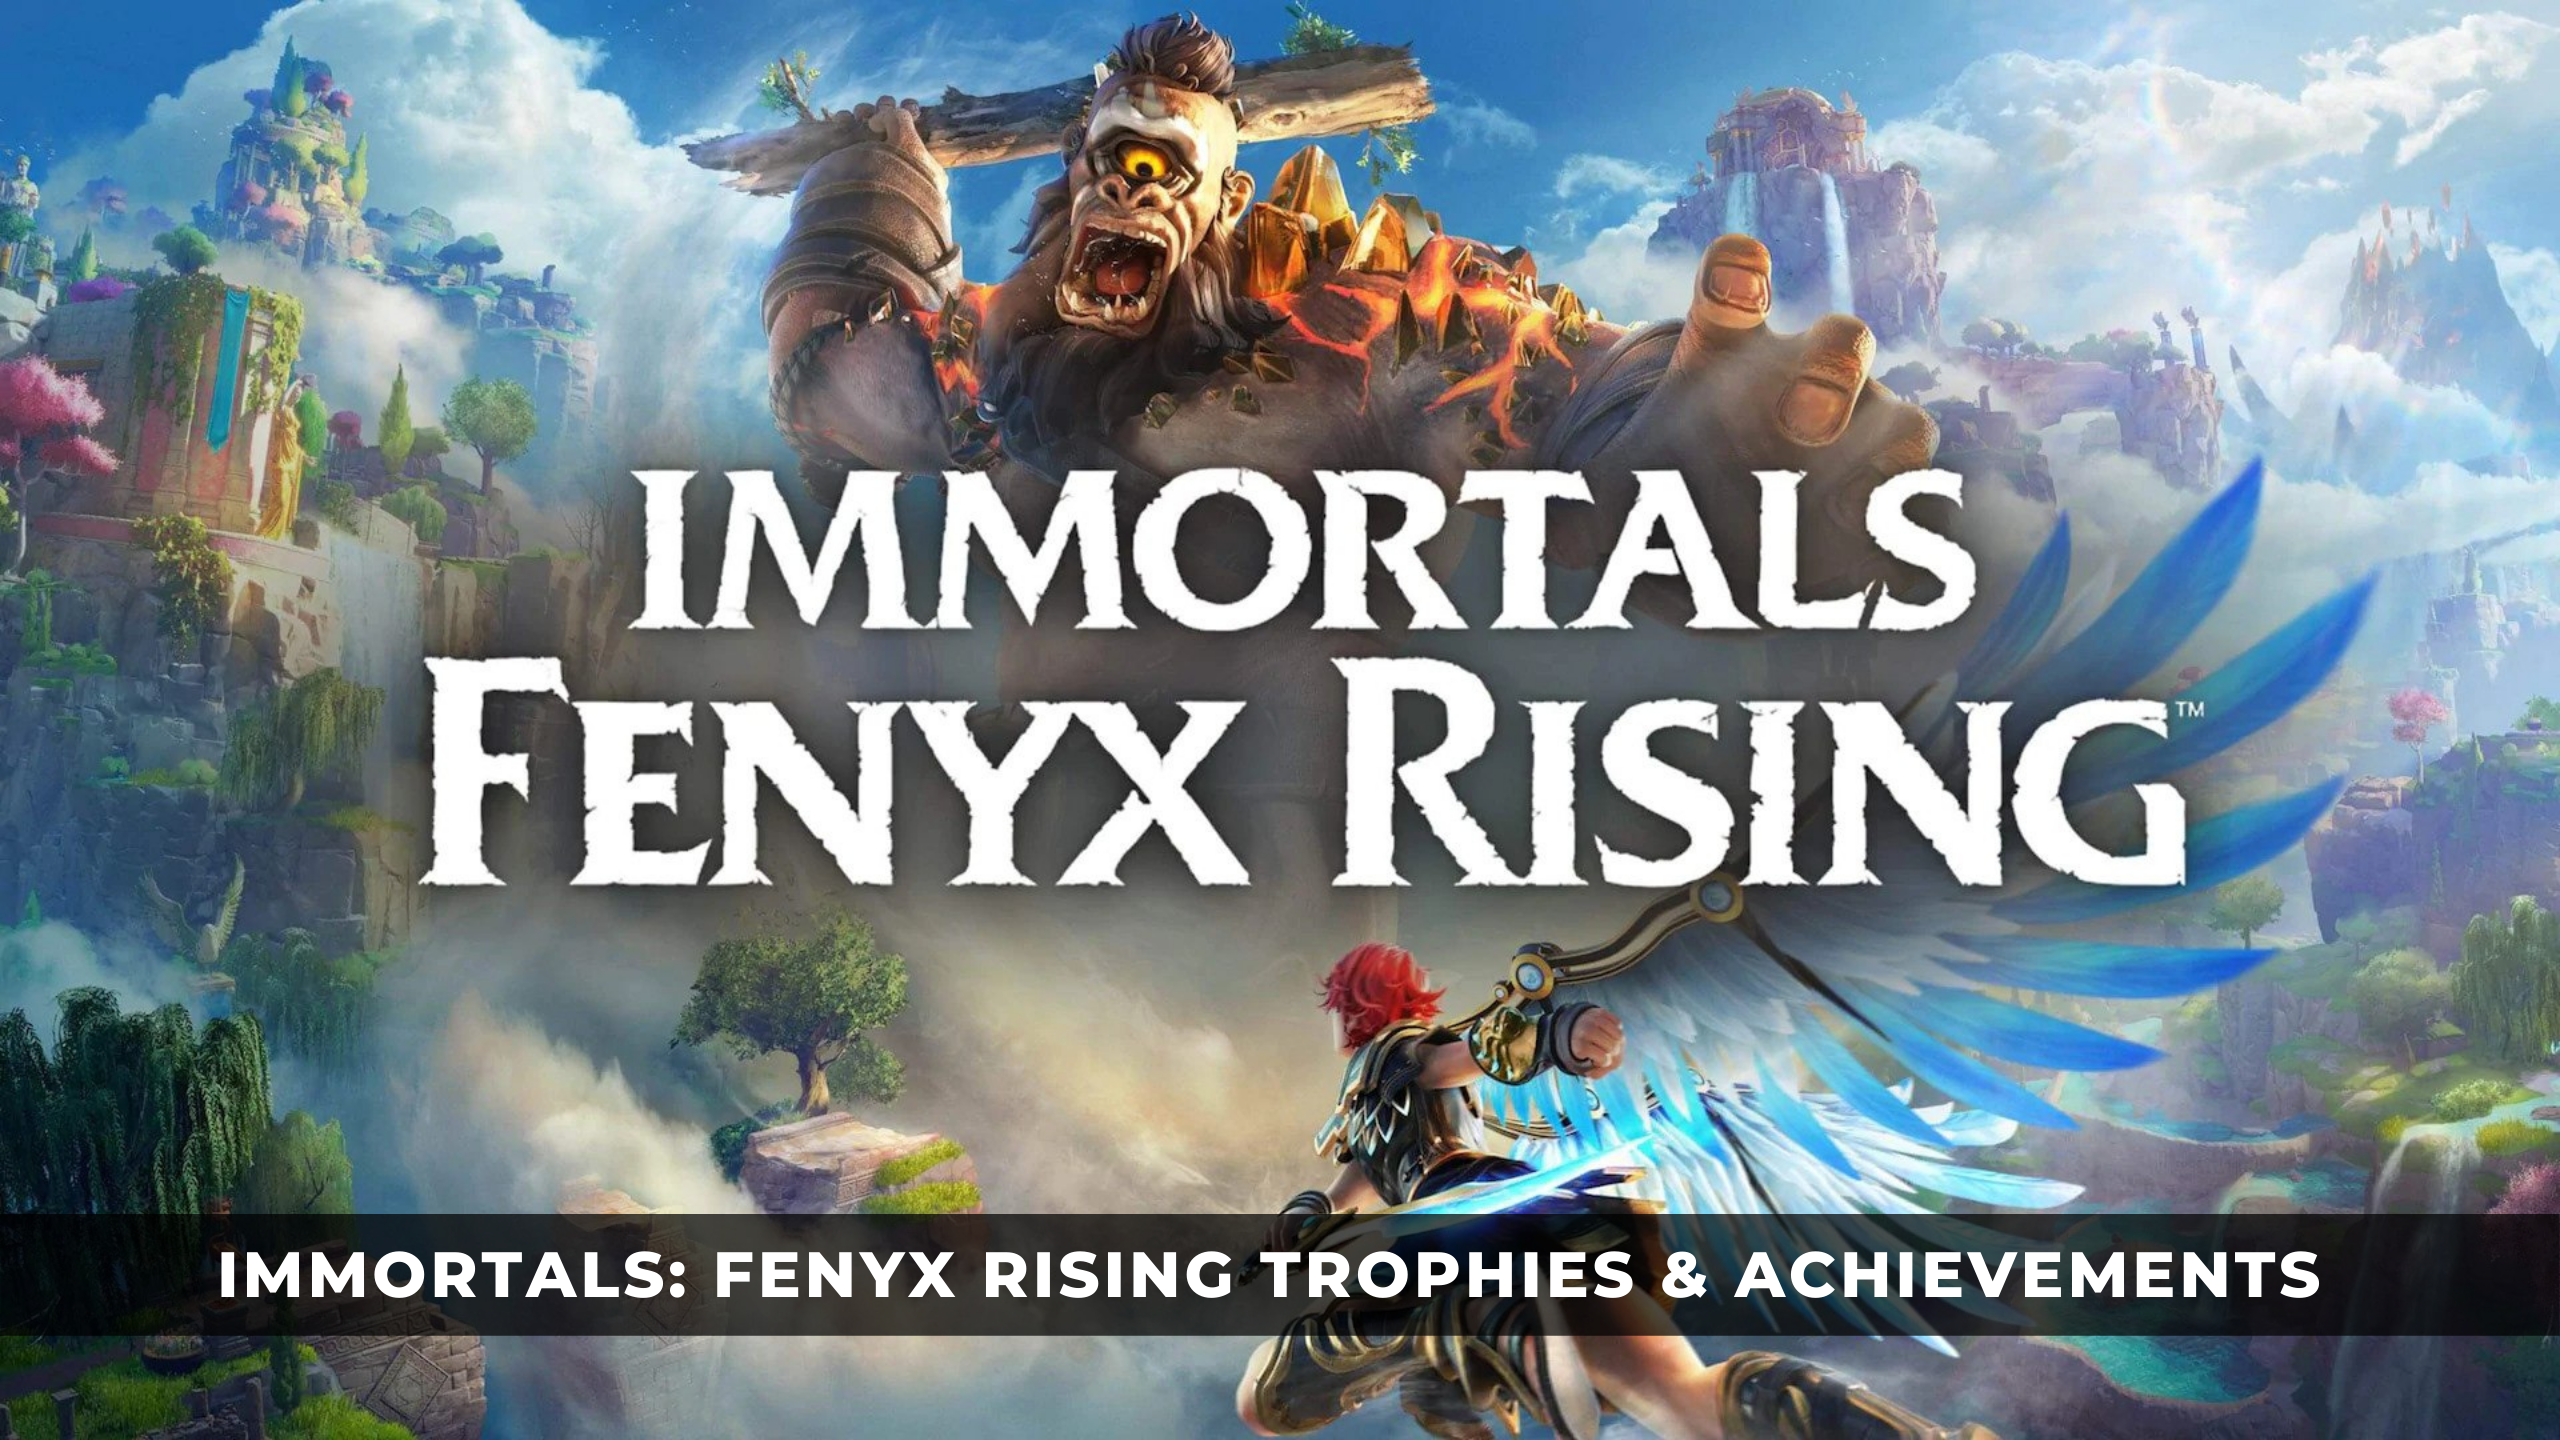 Immortals Fenyx Rising Warrior God Wallpapers